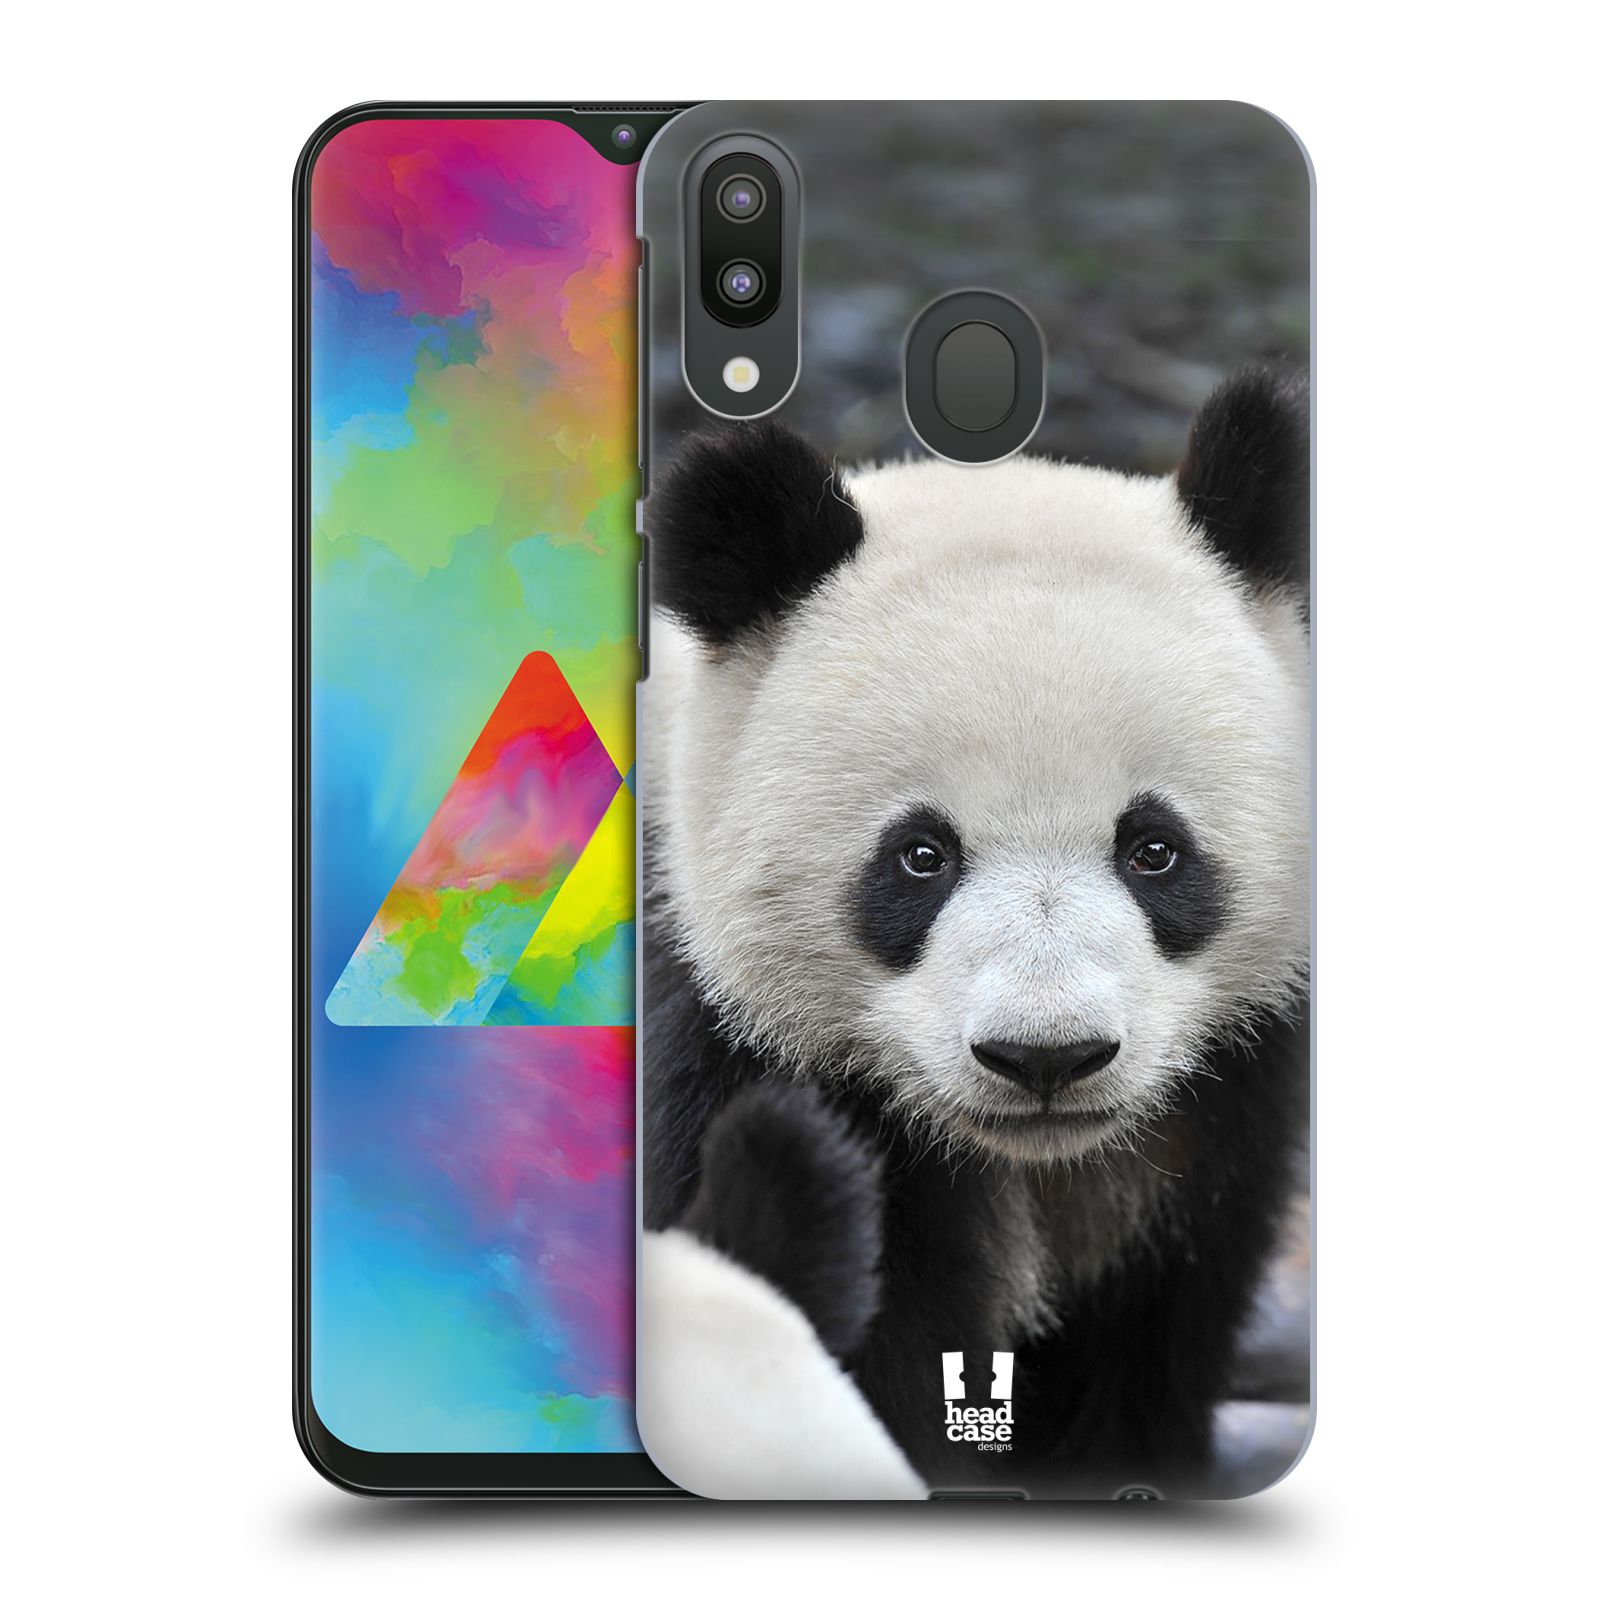 Zadní obal pro mobil Samsung Galaxy M20 - HEAD CASE - Svět zvířat medvěd panda